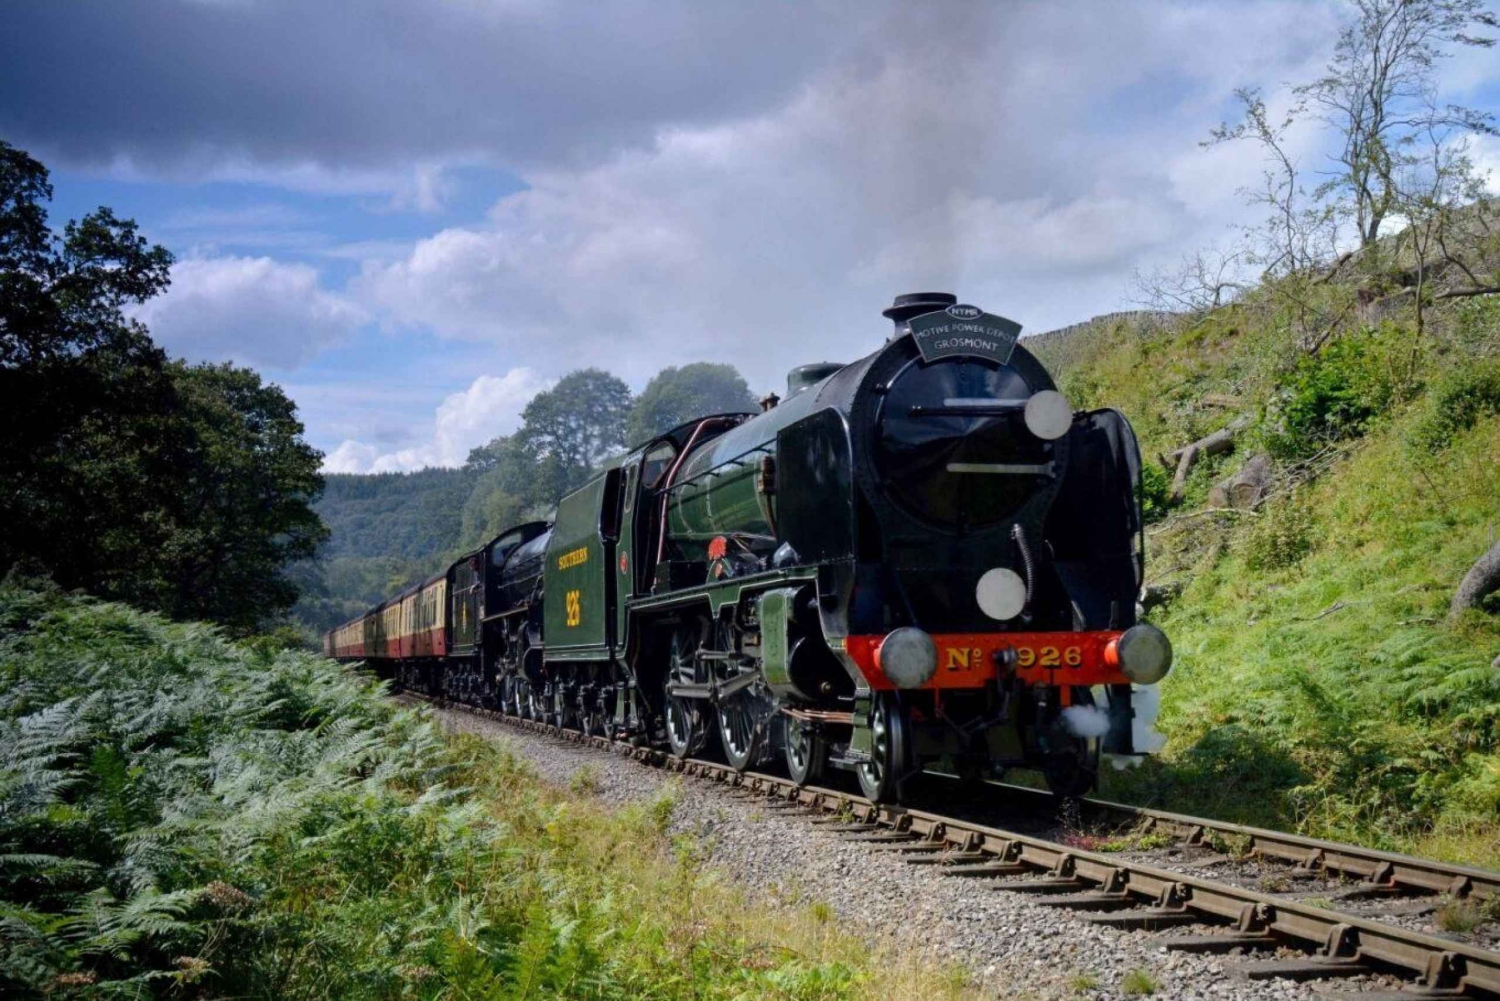 De Londres: As charnecas de North York com trem a vapor para Whitby